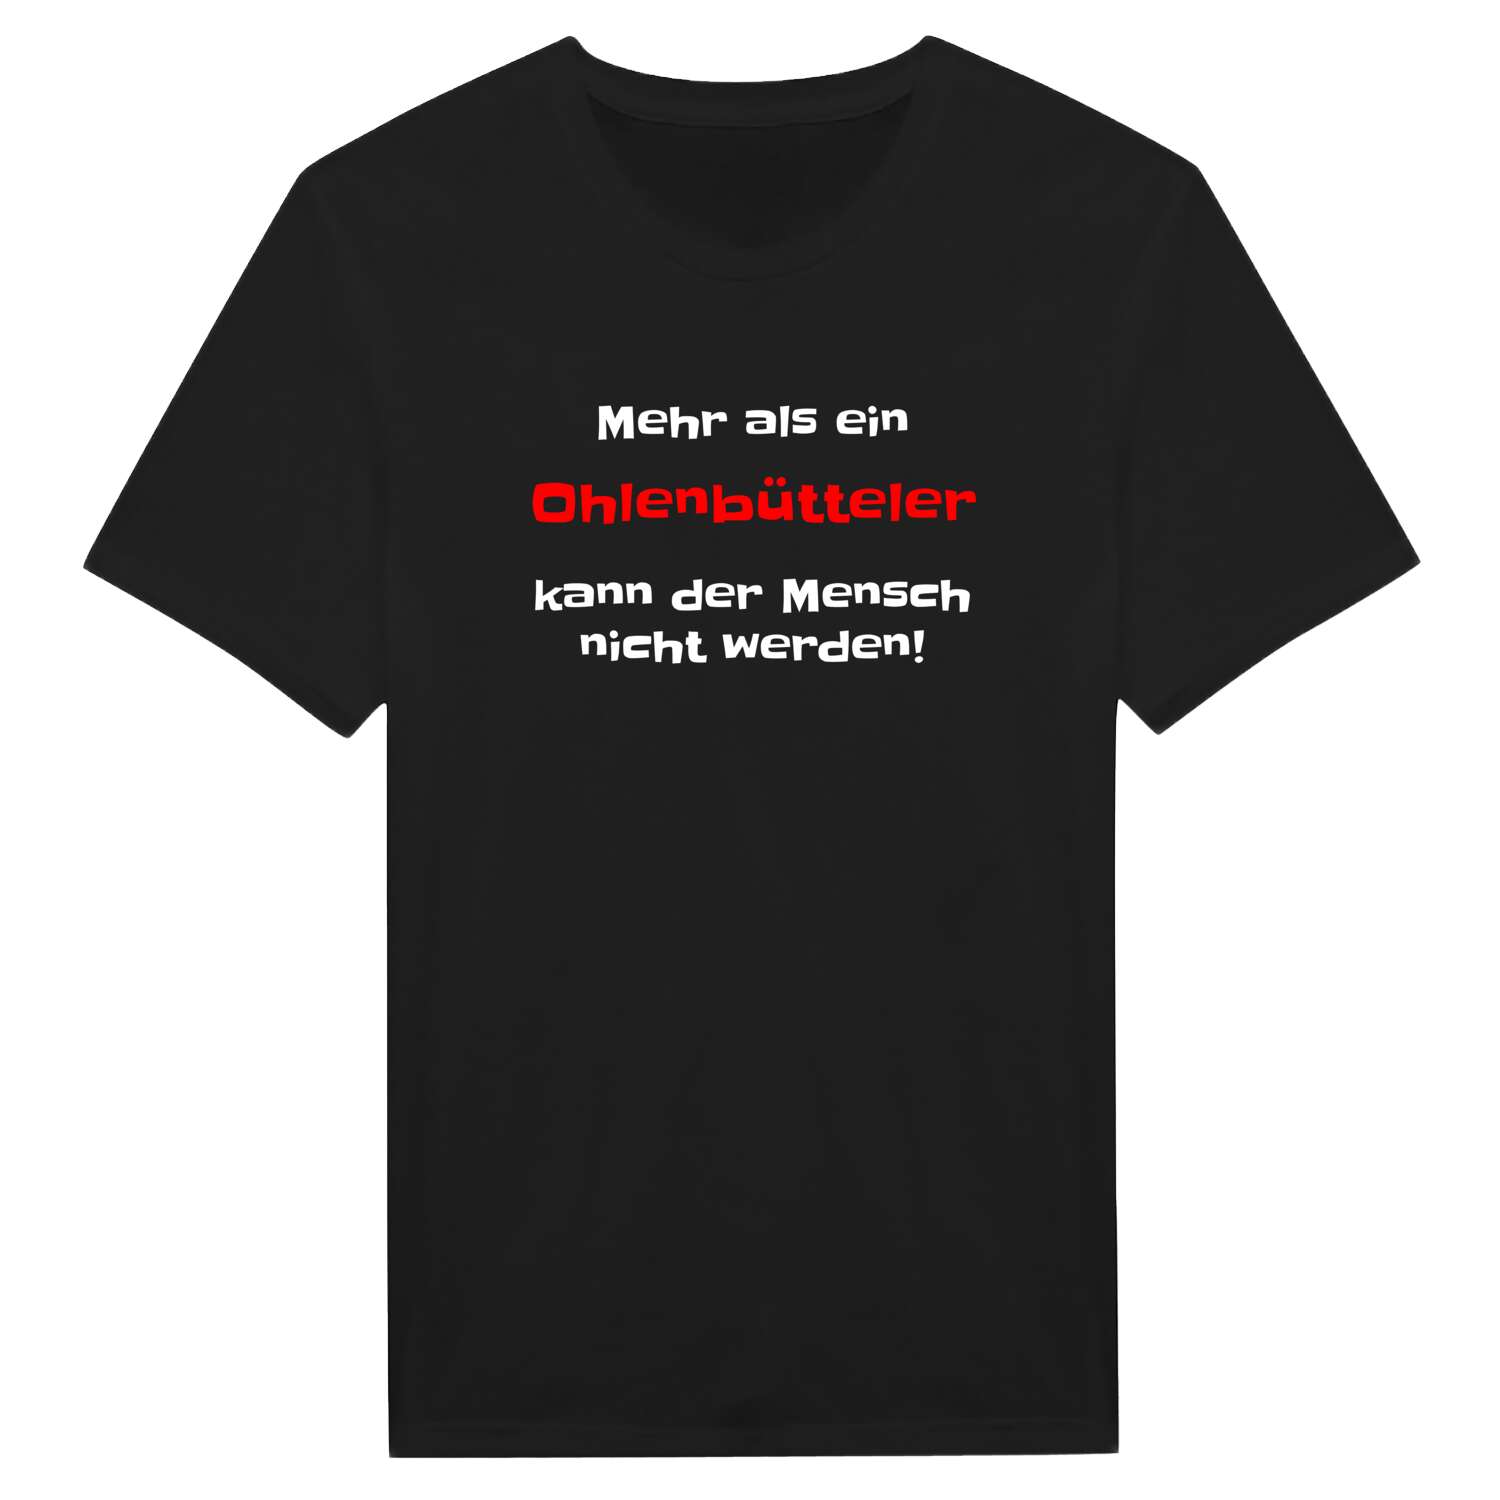 Ohlenbüttel T-Shirt »Mehr als ein«